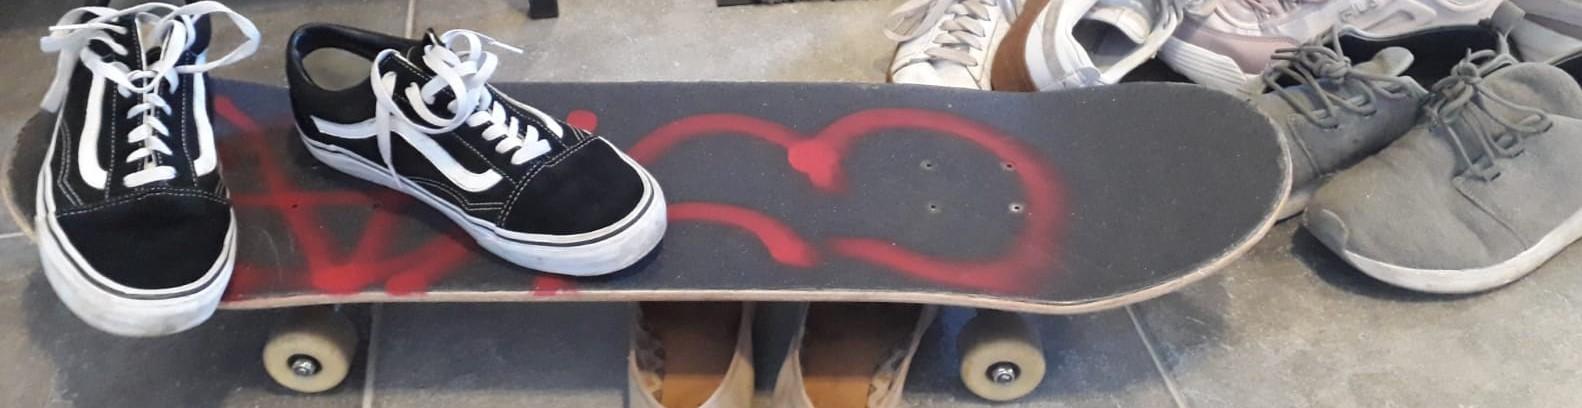 Kuvituskuva rippikoululaisten kenkiä ja skateboard.